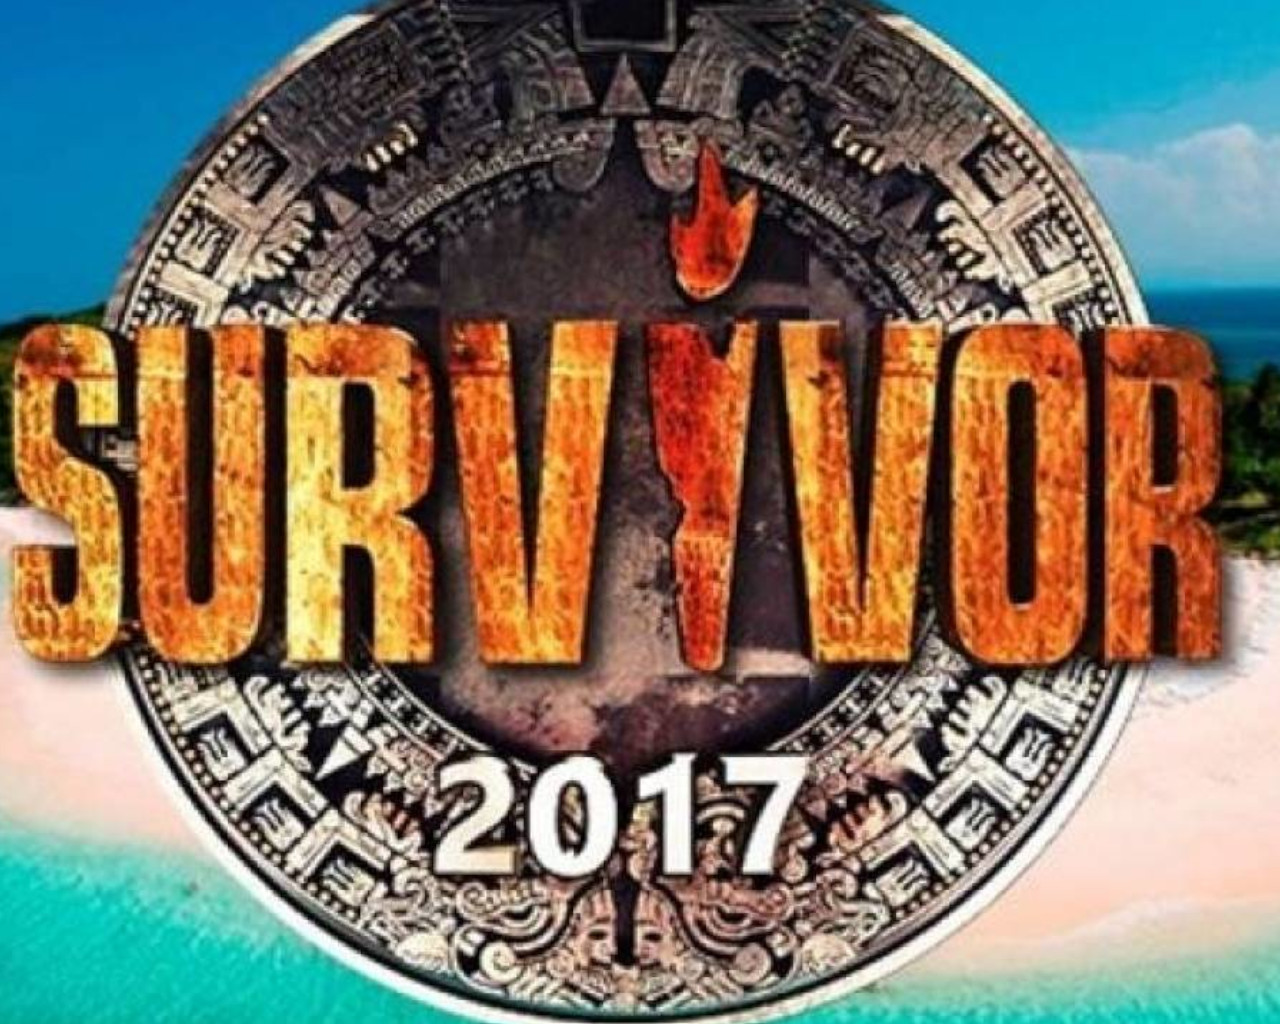 survivor 2017,survivor 2017,survivor 2017 παικτεσ,survivor 2017 επεισοδιο 1,survivor 2017 επεισοδιο 2,survivor 2017 τελικοσ,survivor 2017 επεισοδιο 4,survivor 2017 επεισοδιο 10,survivor 2017 επεισοδιο 6